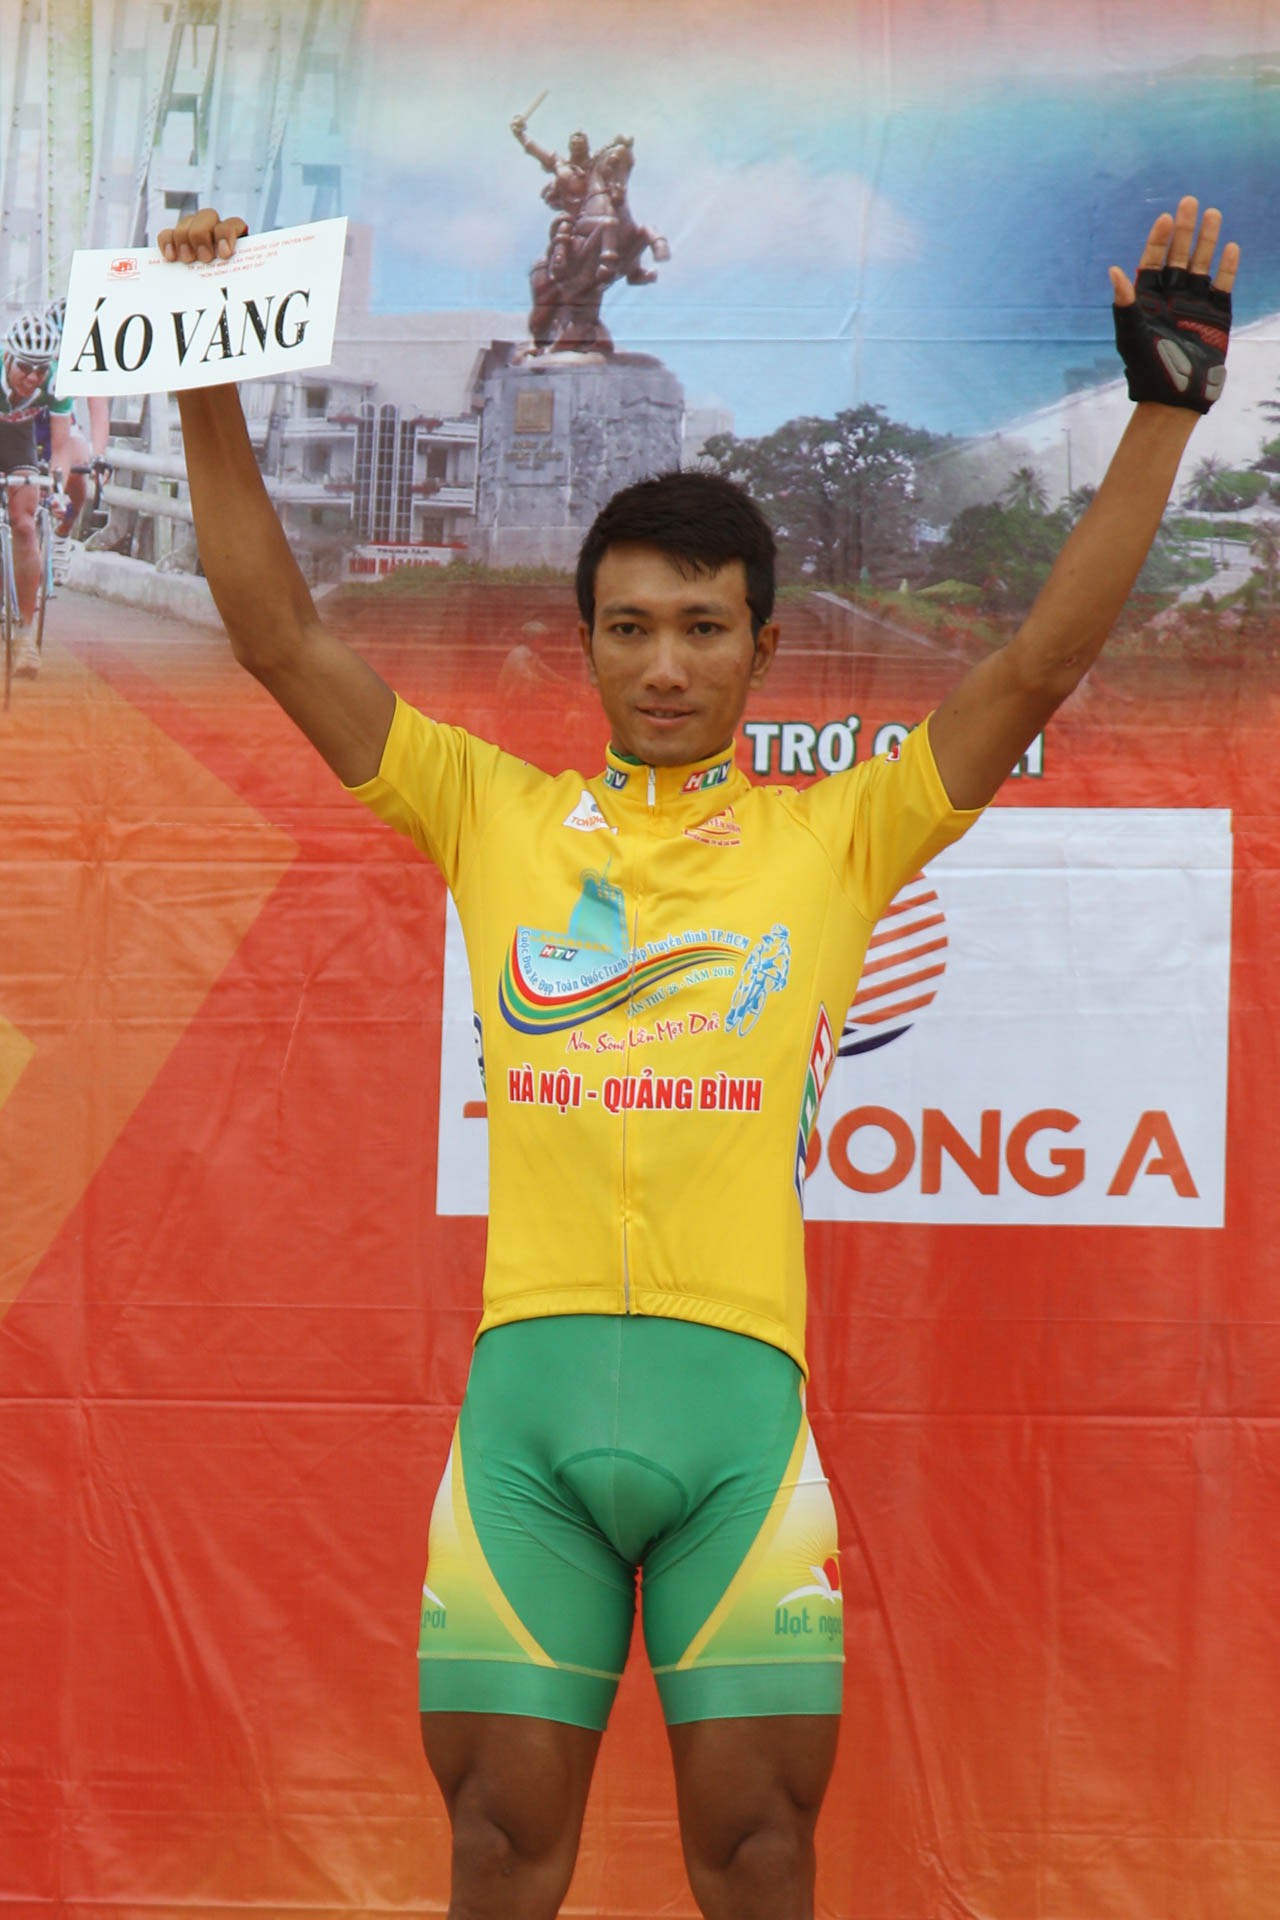 Sức mạnh toàn diện giúp Nguyễn Thành Tâm có ưu thế trong các cuộc đua